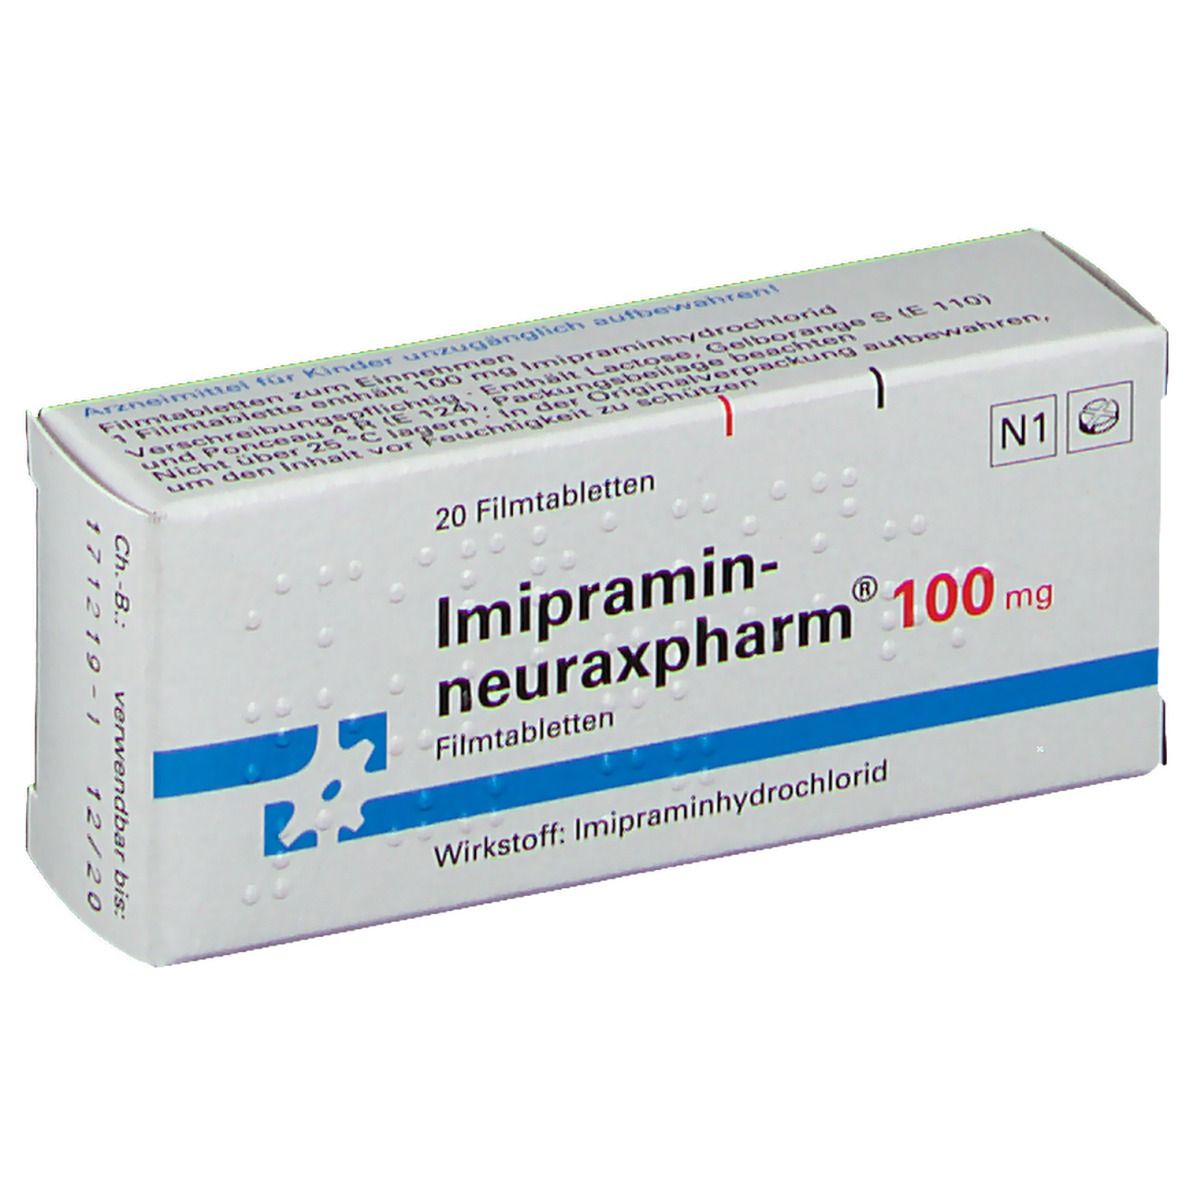 Imipramin-neuraxpharm® 100 mg